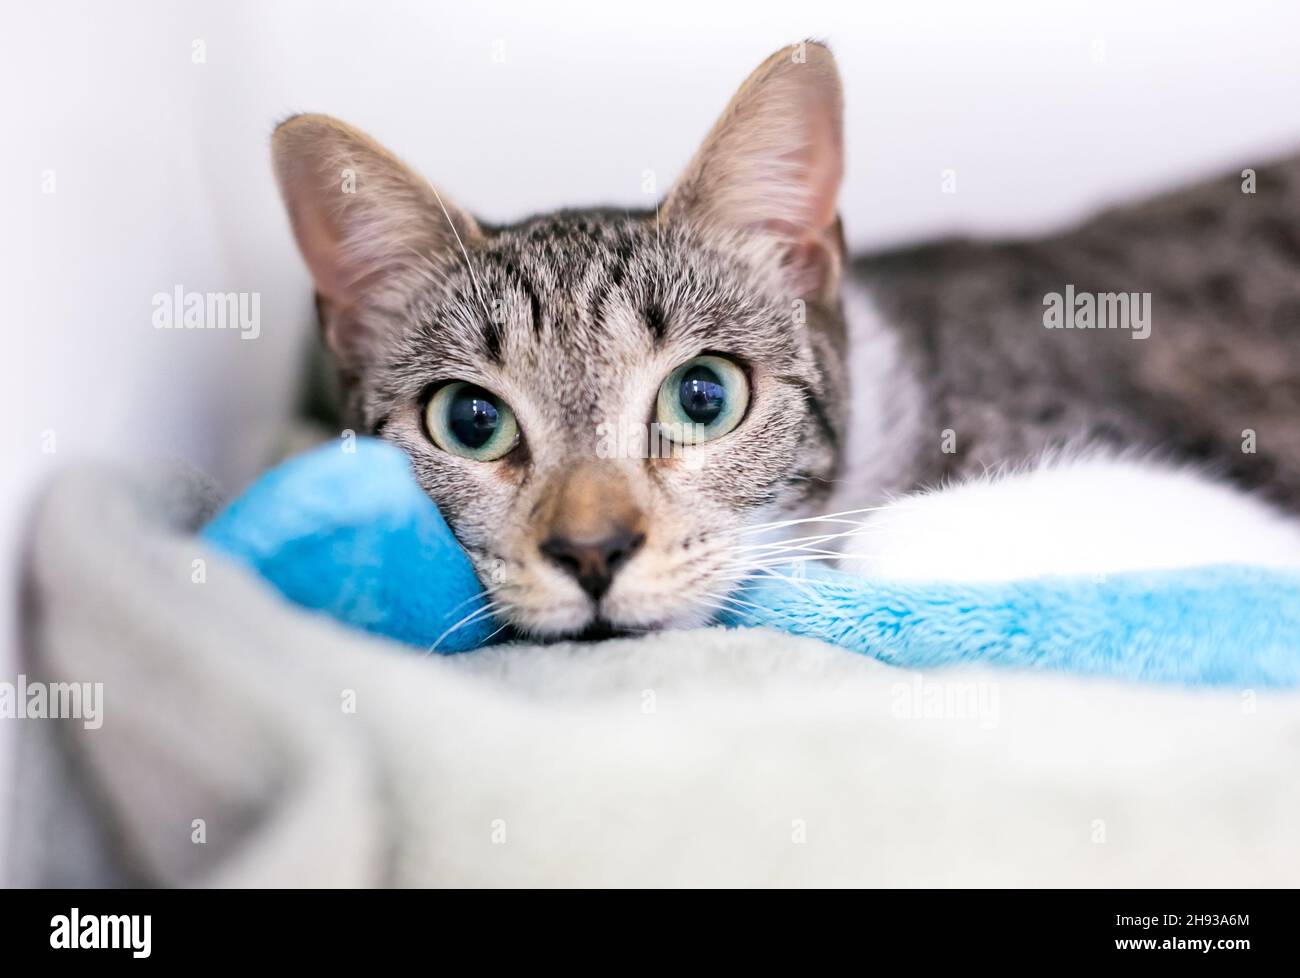 Un gato tabby shorthair de ojos anchos tumbado sobre una manta y mirando la cámara Foto de stock